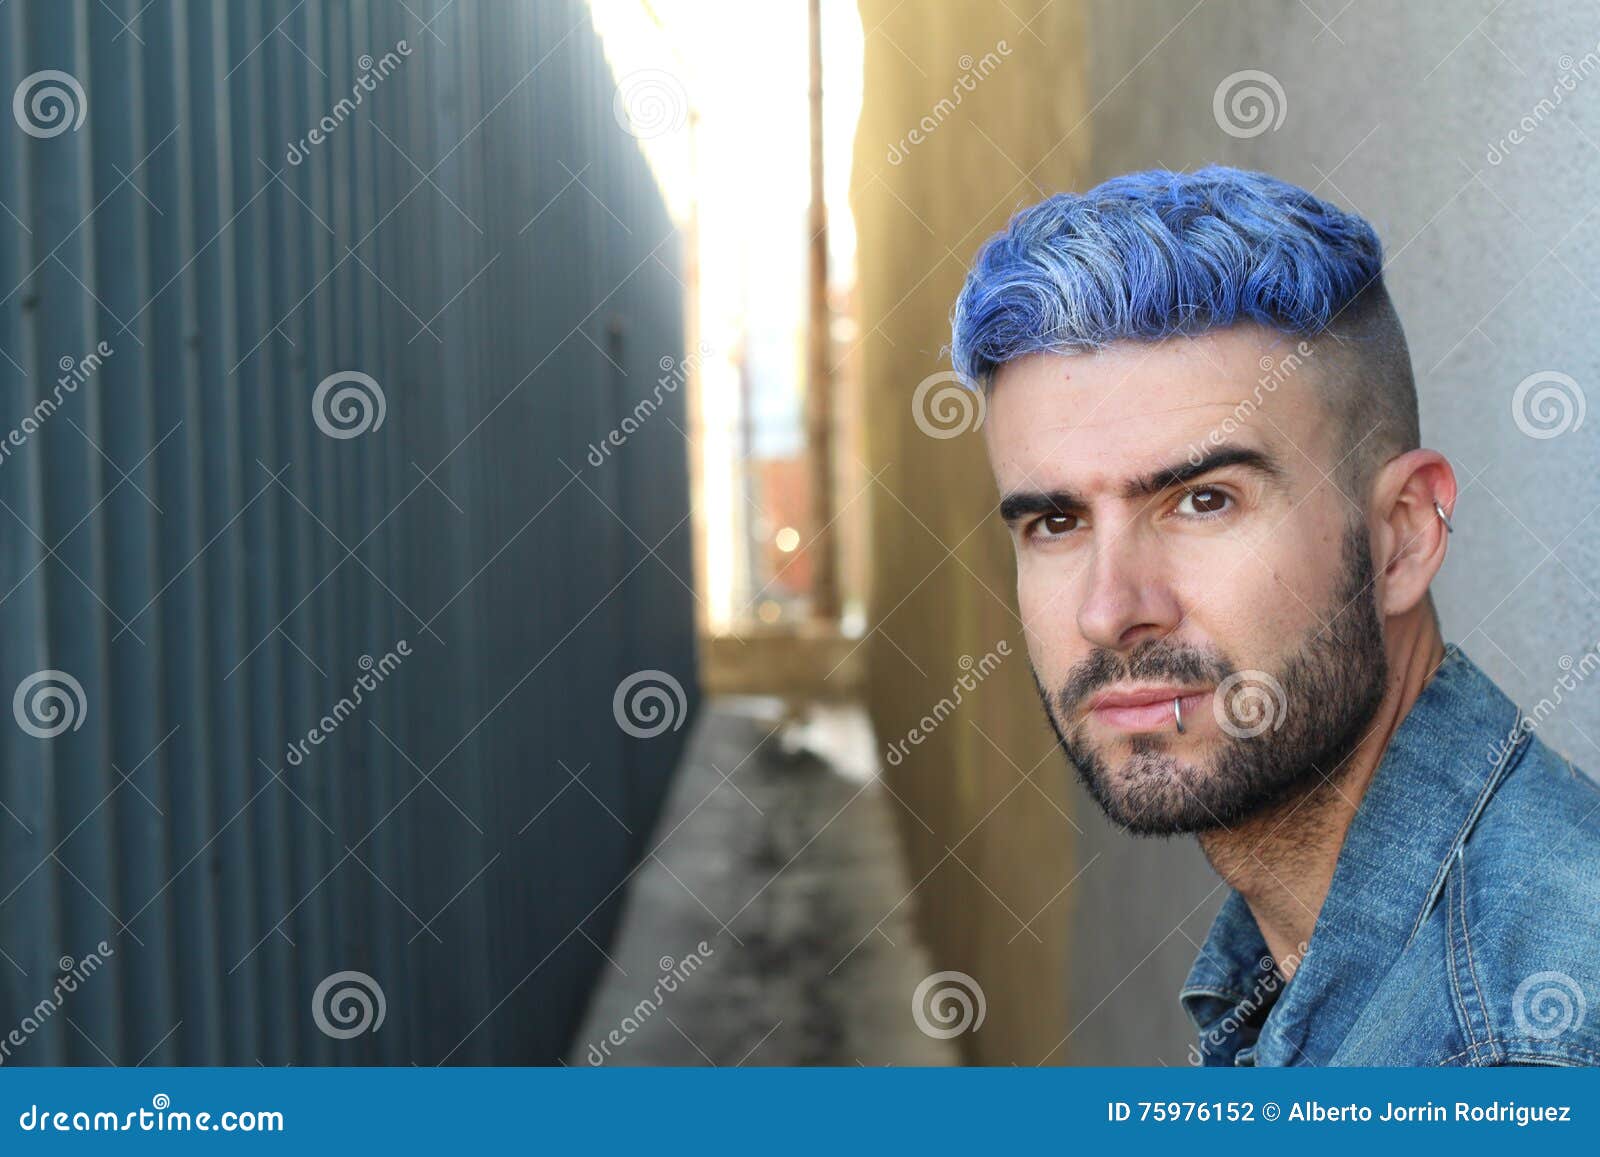 1. Silver Blue Hair Dye for Men - wide 3